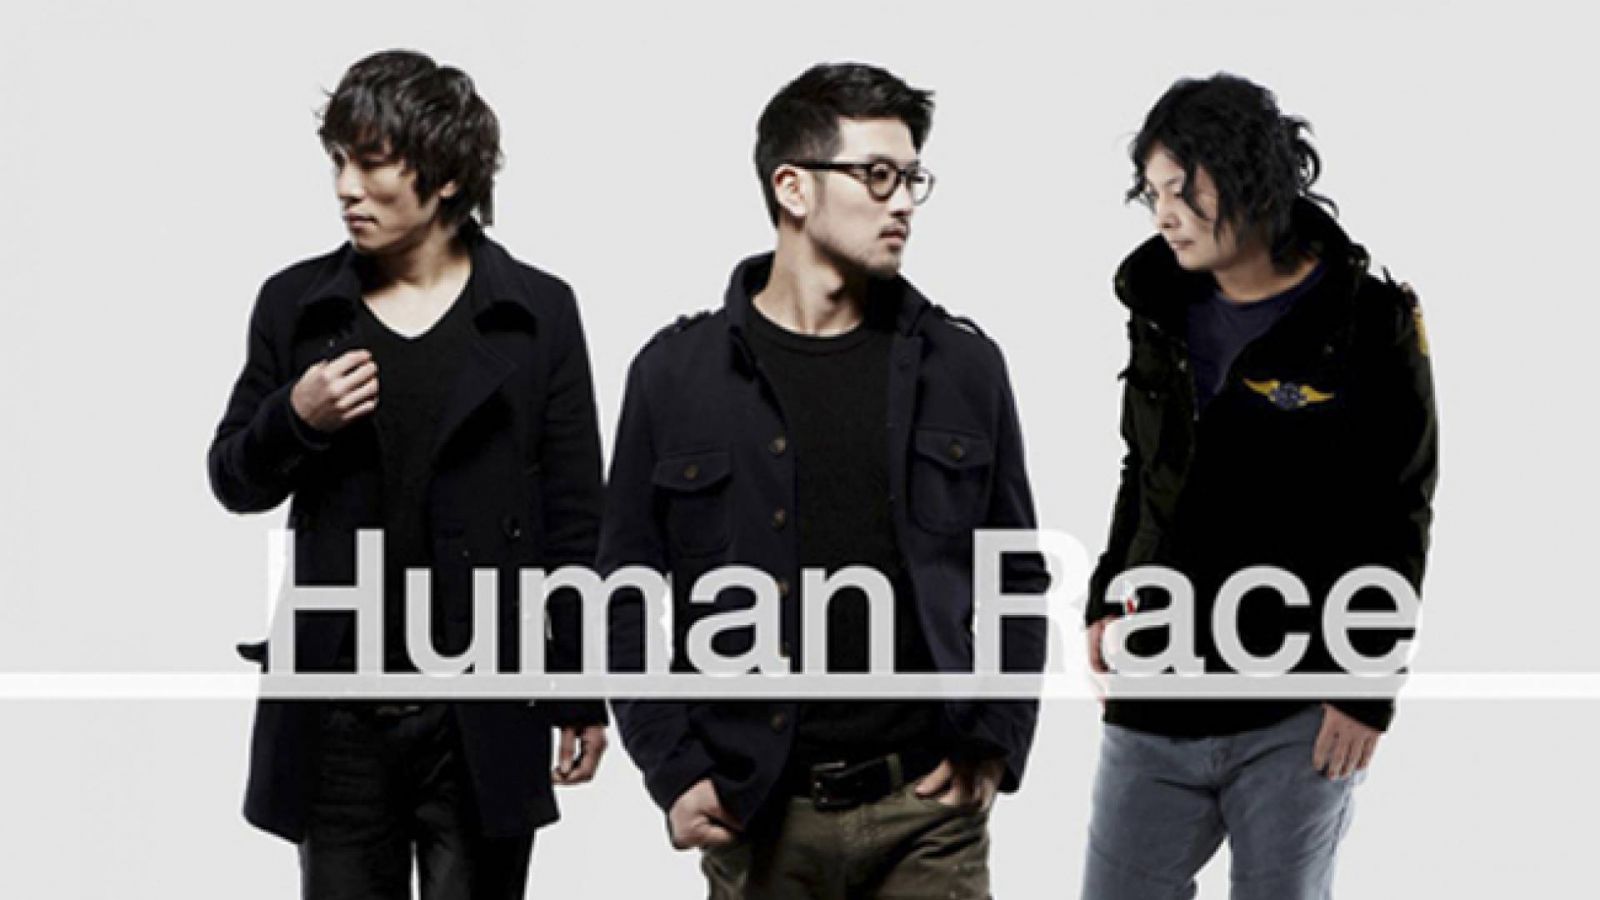 Human Race ja toinen minialbumi © Human Race